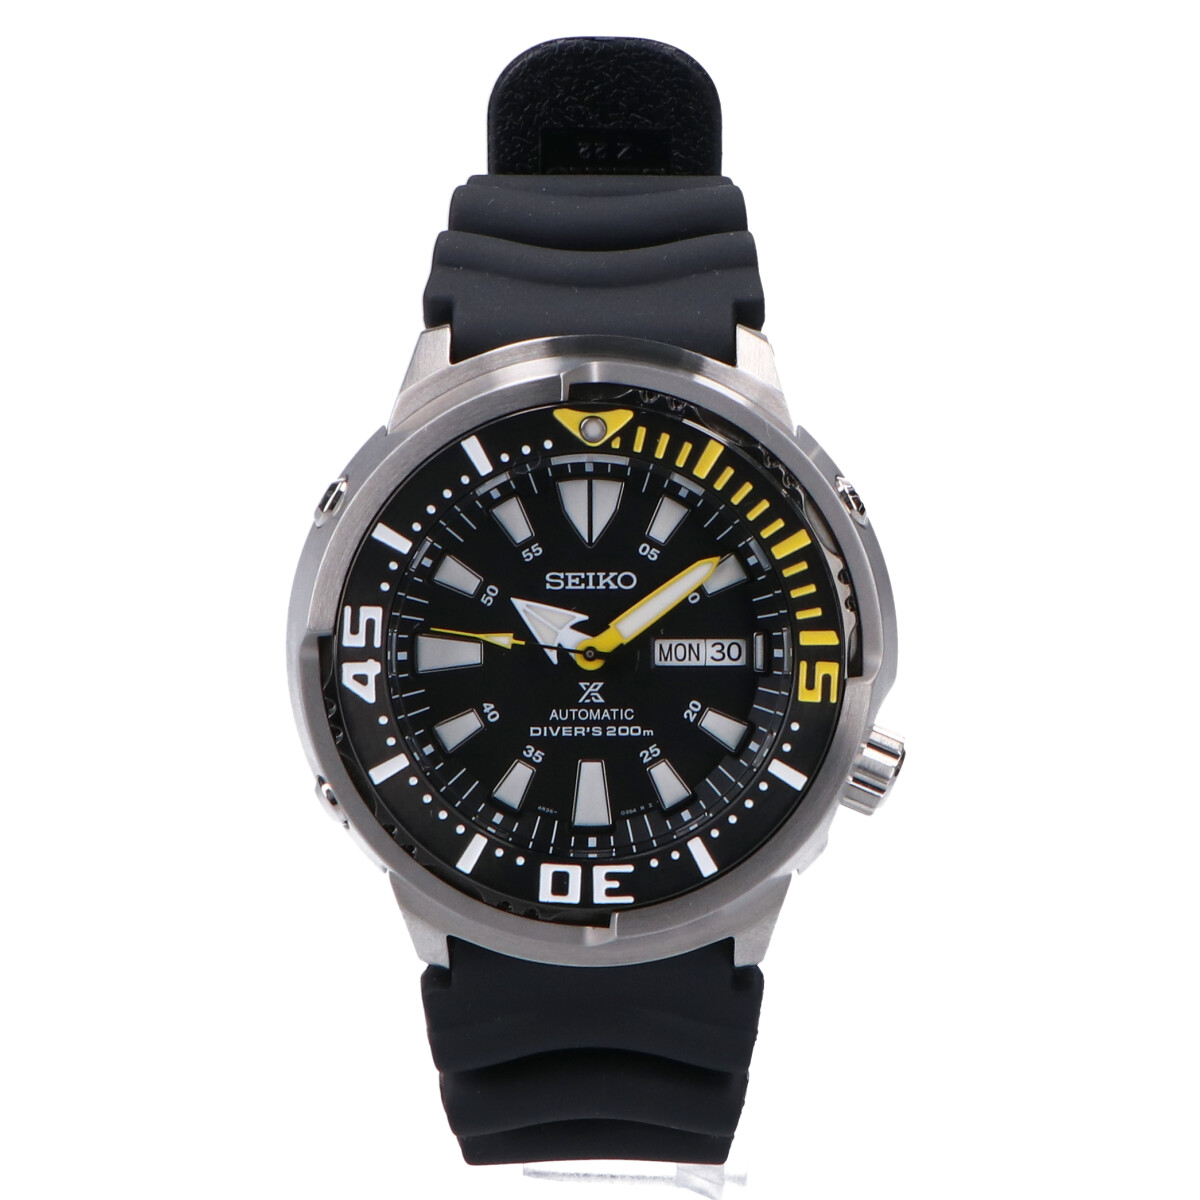 セイコーのSRP639K1 プロスペックス 海外モデル ダイバーズ 自動巻き時計の買取実績です。